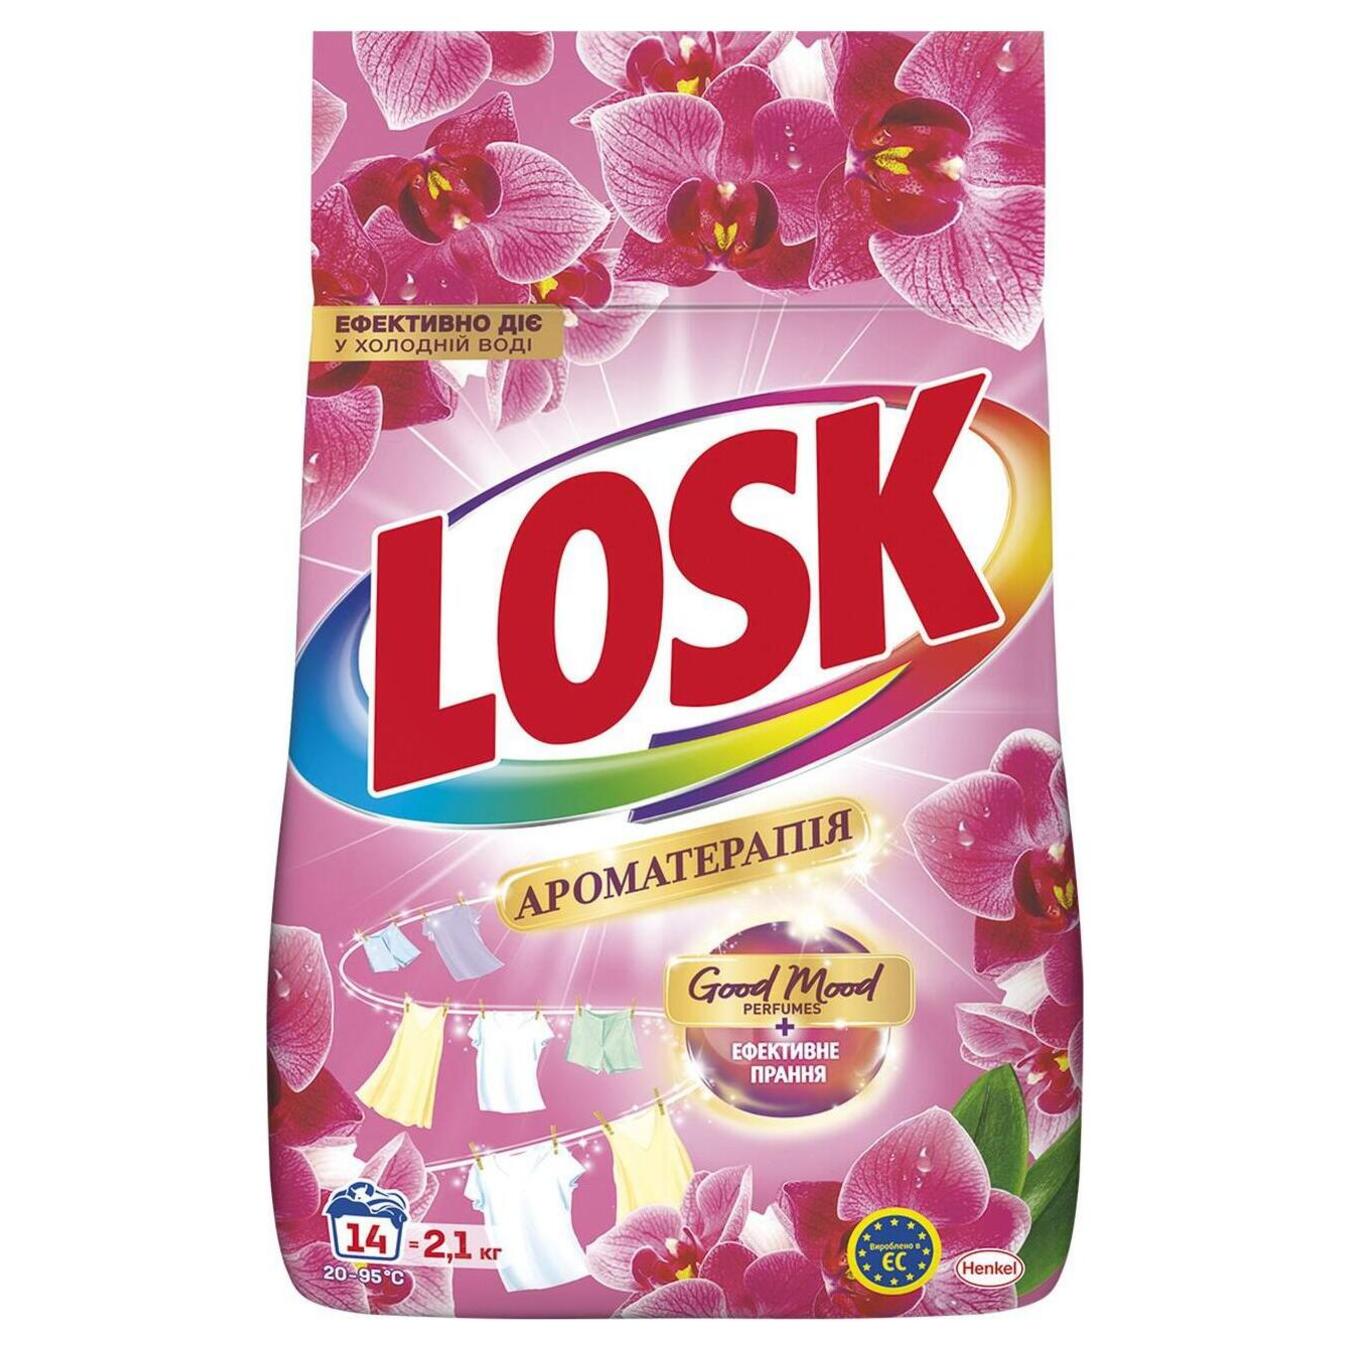 Порошок для стирки автомат Losk АО Эфирные масла и аромат Малазийского цветка 2,1 кг